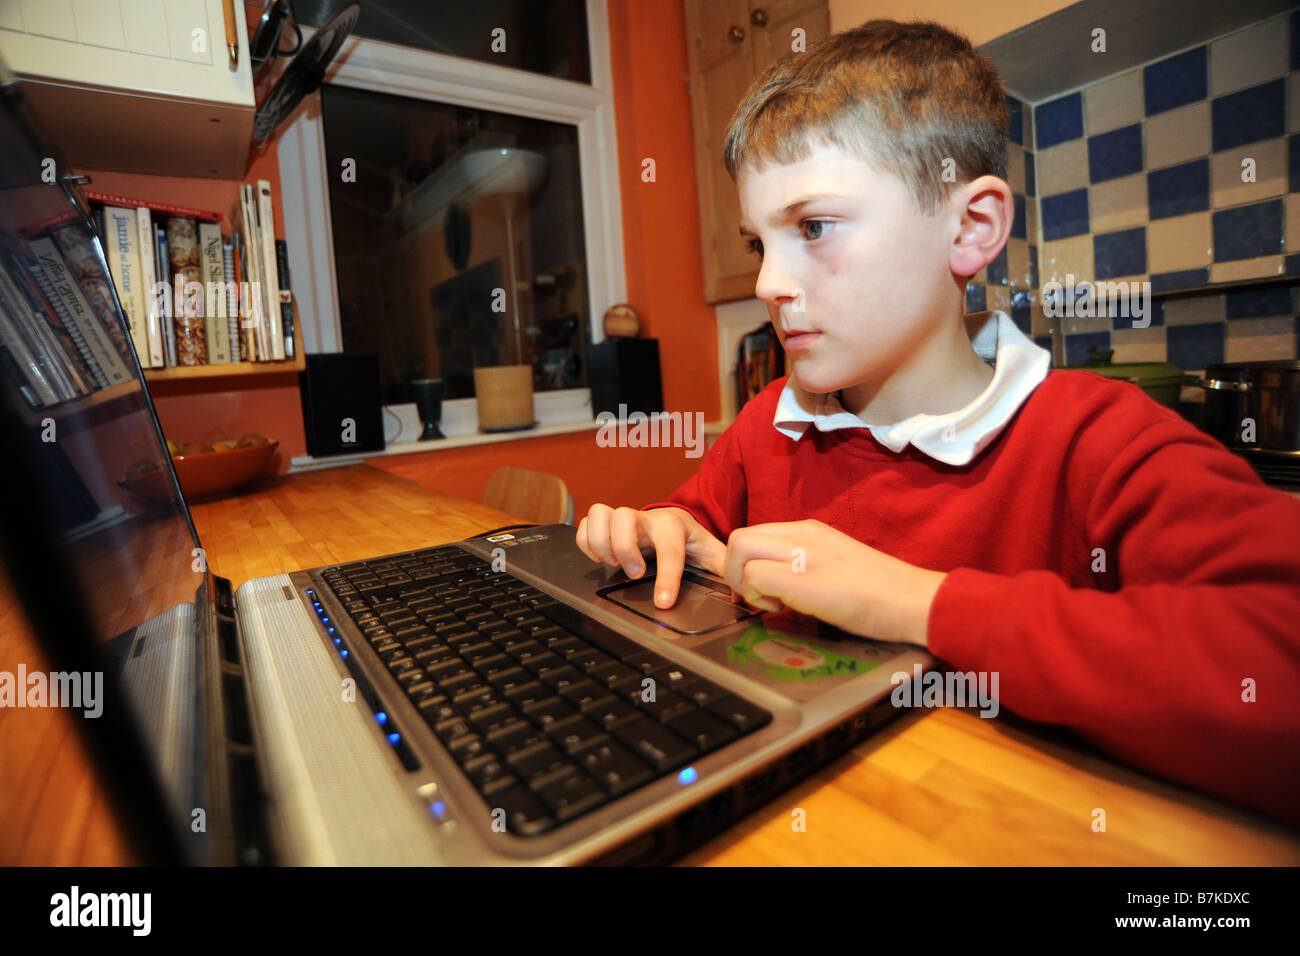 Un garçon de huit ans utilise l'ordinateur portable pour faire ses devoirs dans la cuisine Banque D'Images